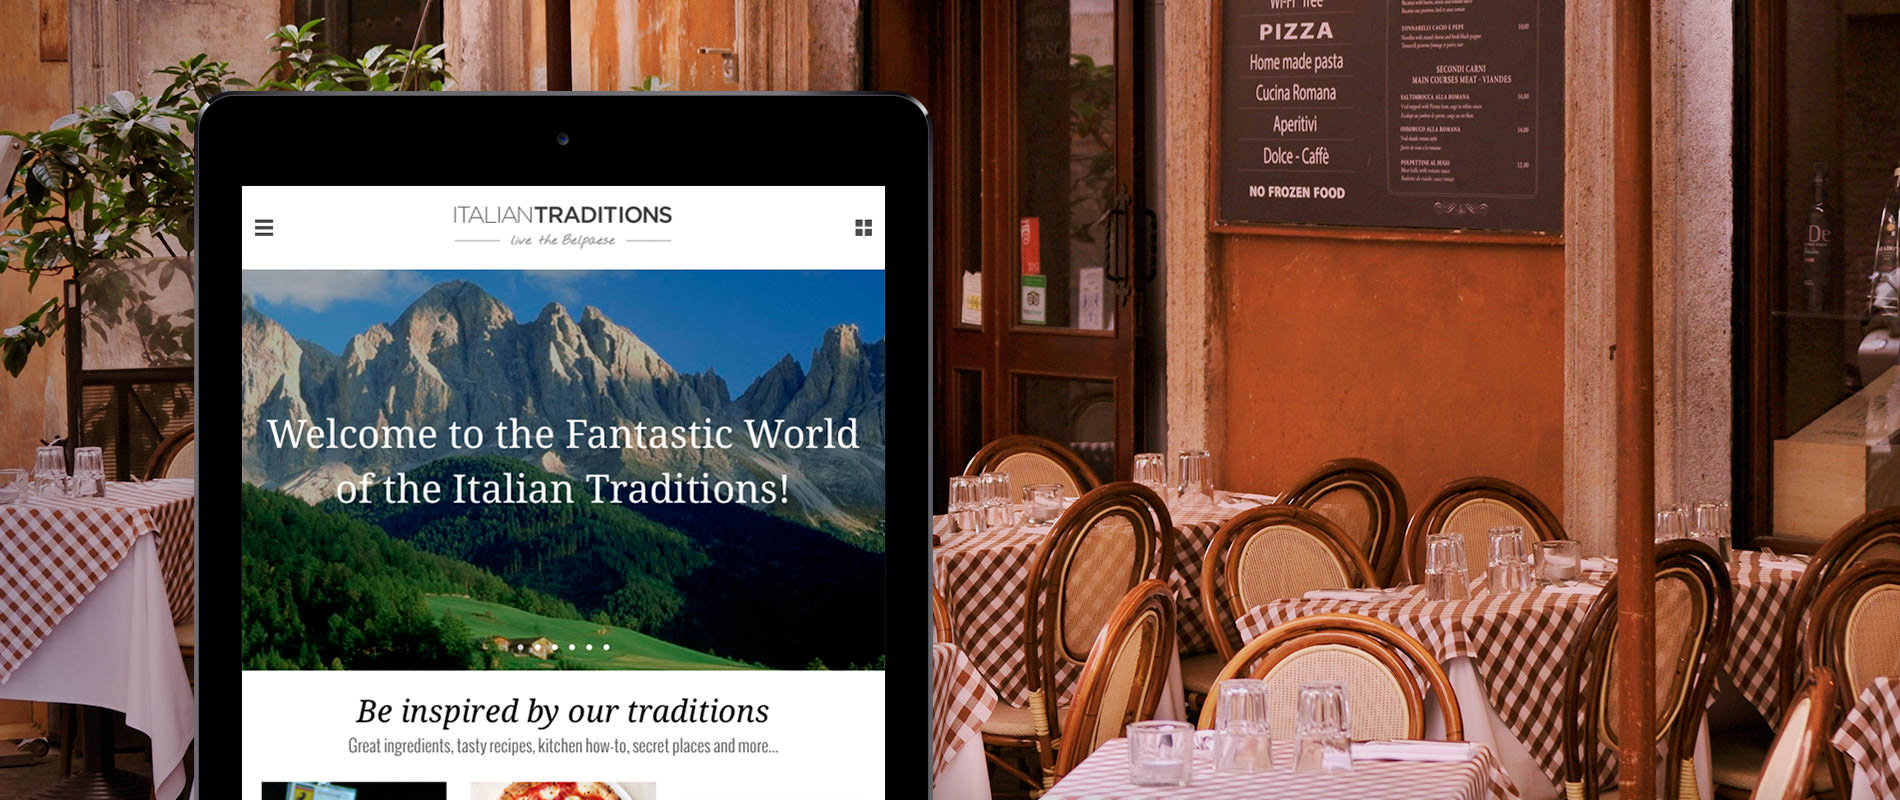 Italian Traditions, la piattaforma che promuove le eccellenze italiane all'estero 2